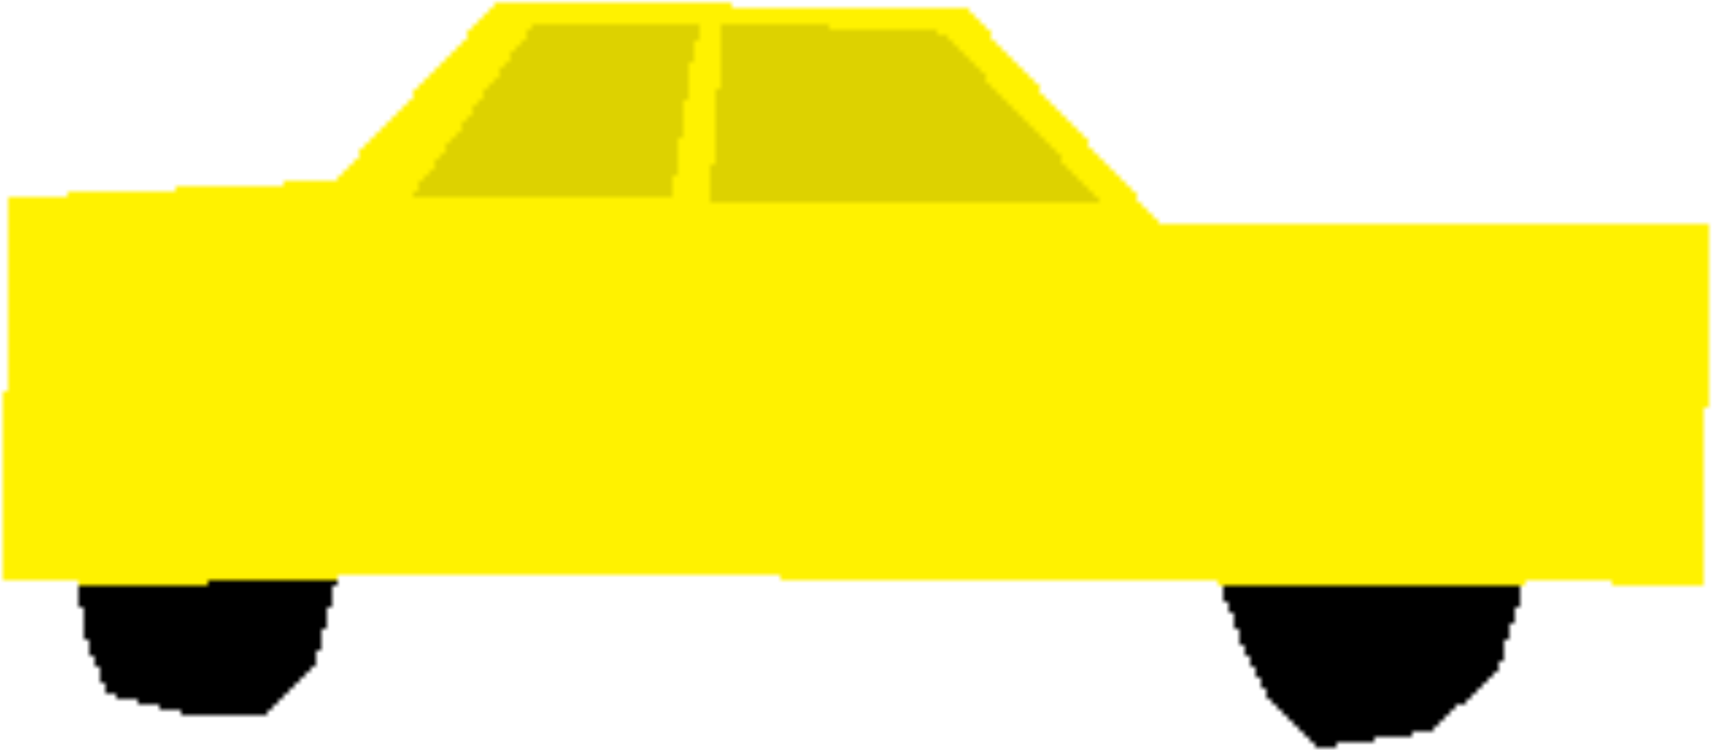 Angle,Yellow,Vehicle